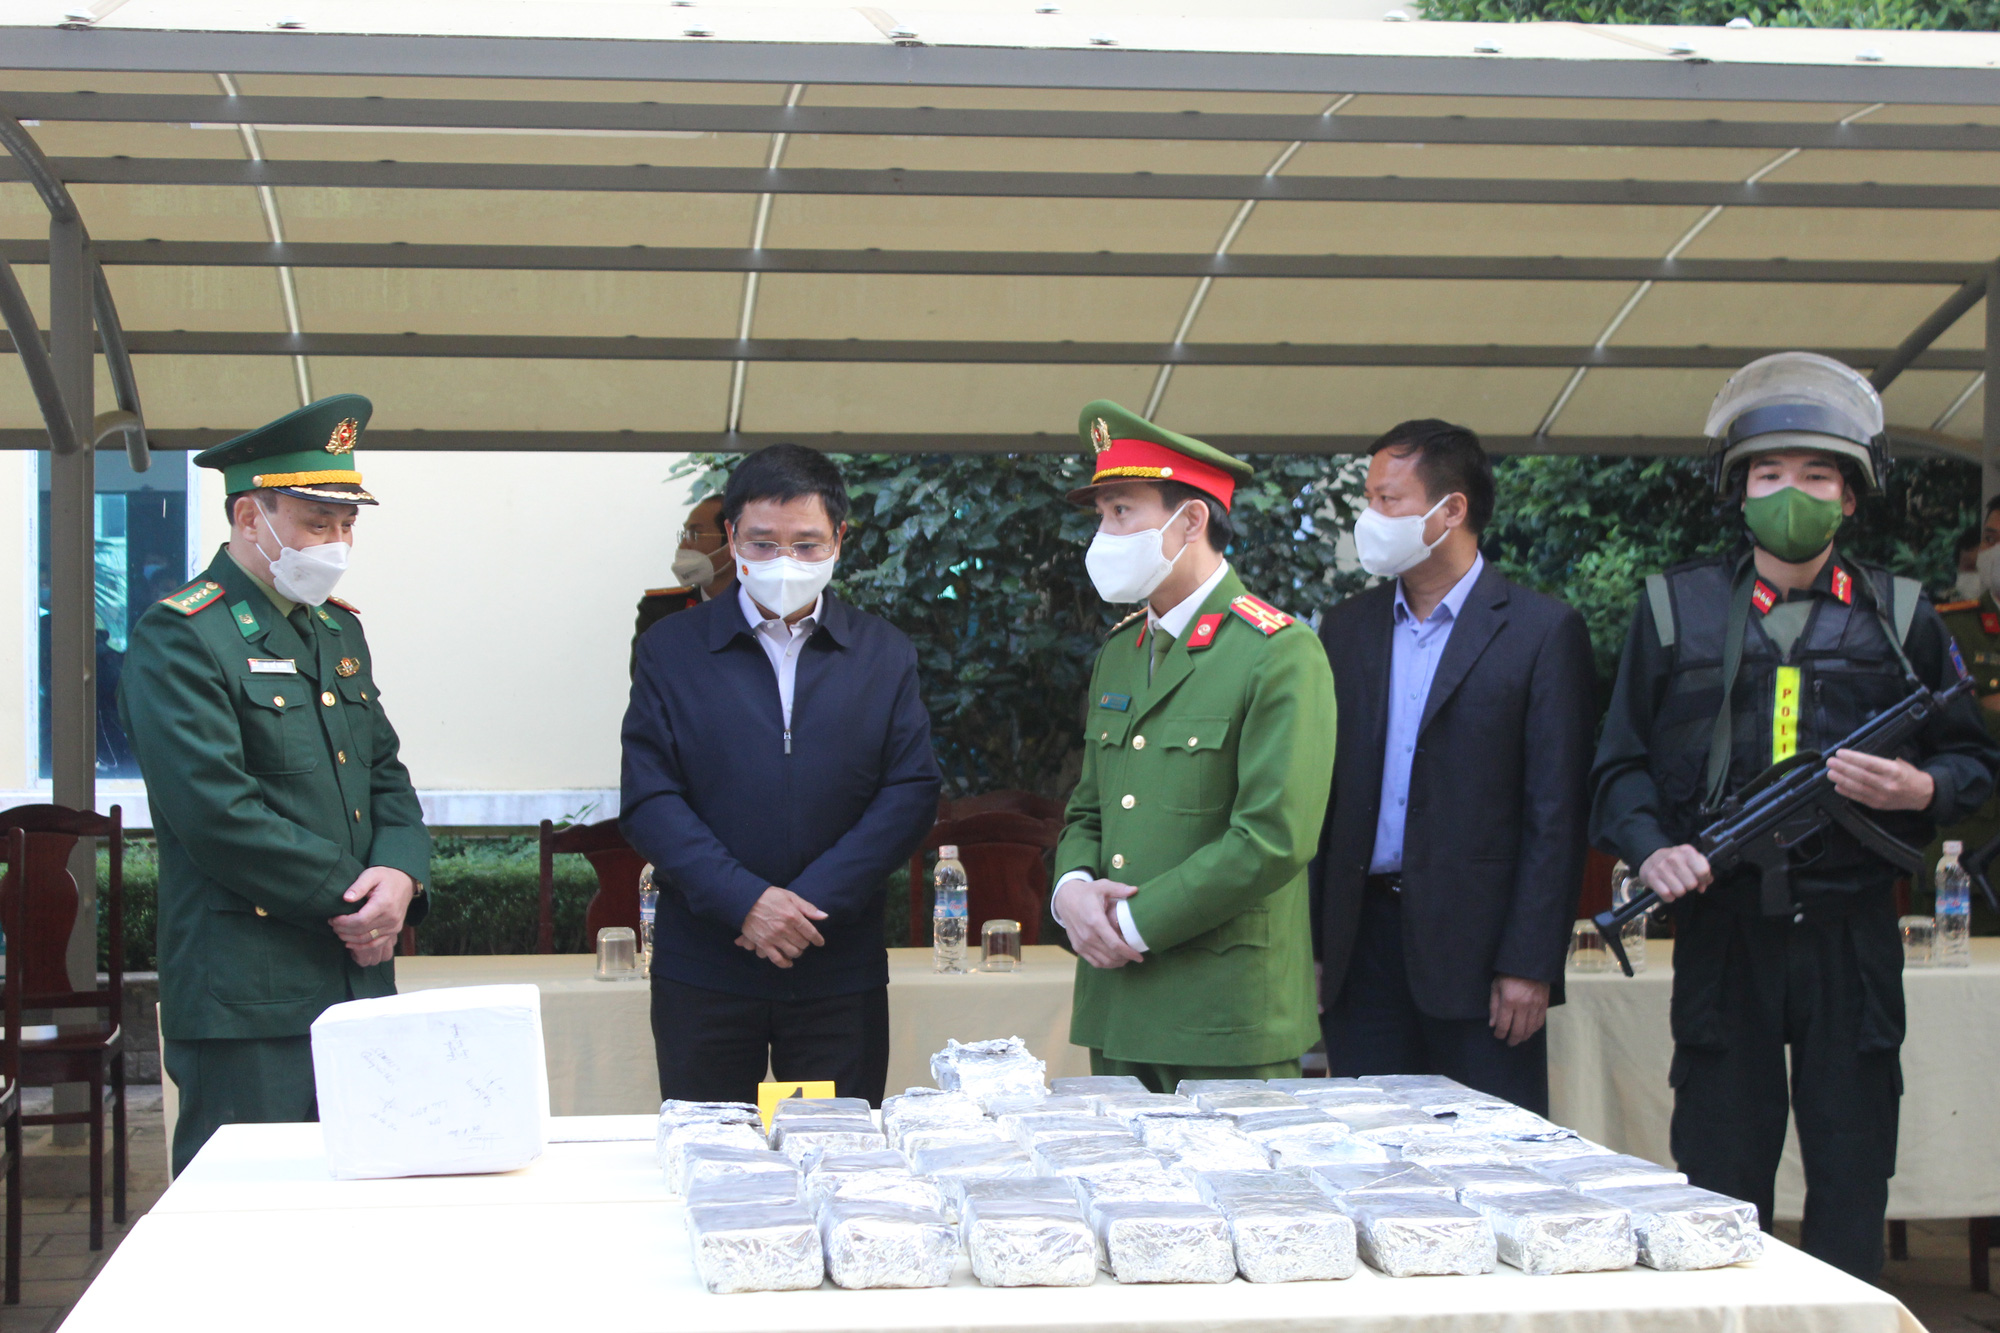 99 bánh heroin, 01 kg ma tuý đá vừa bị lực lượng chức năng thu giữ ở Điện Biên - Ảnh 2.